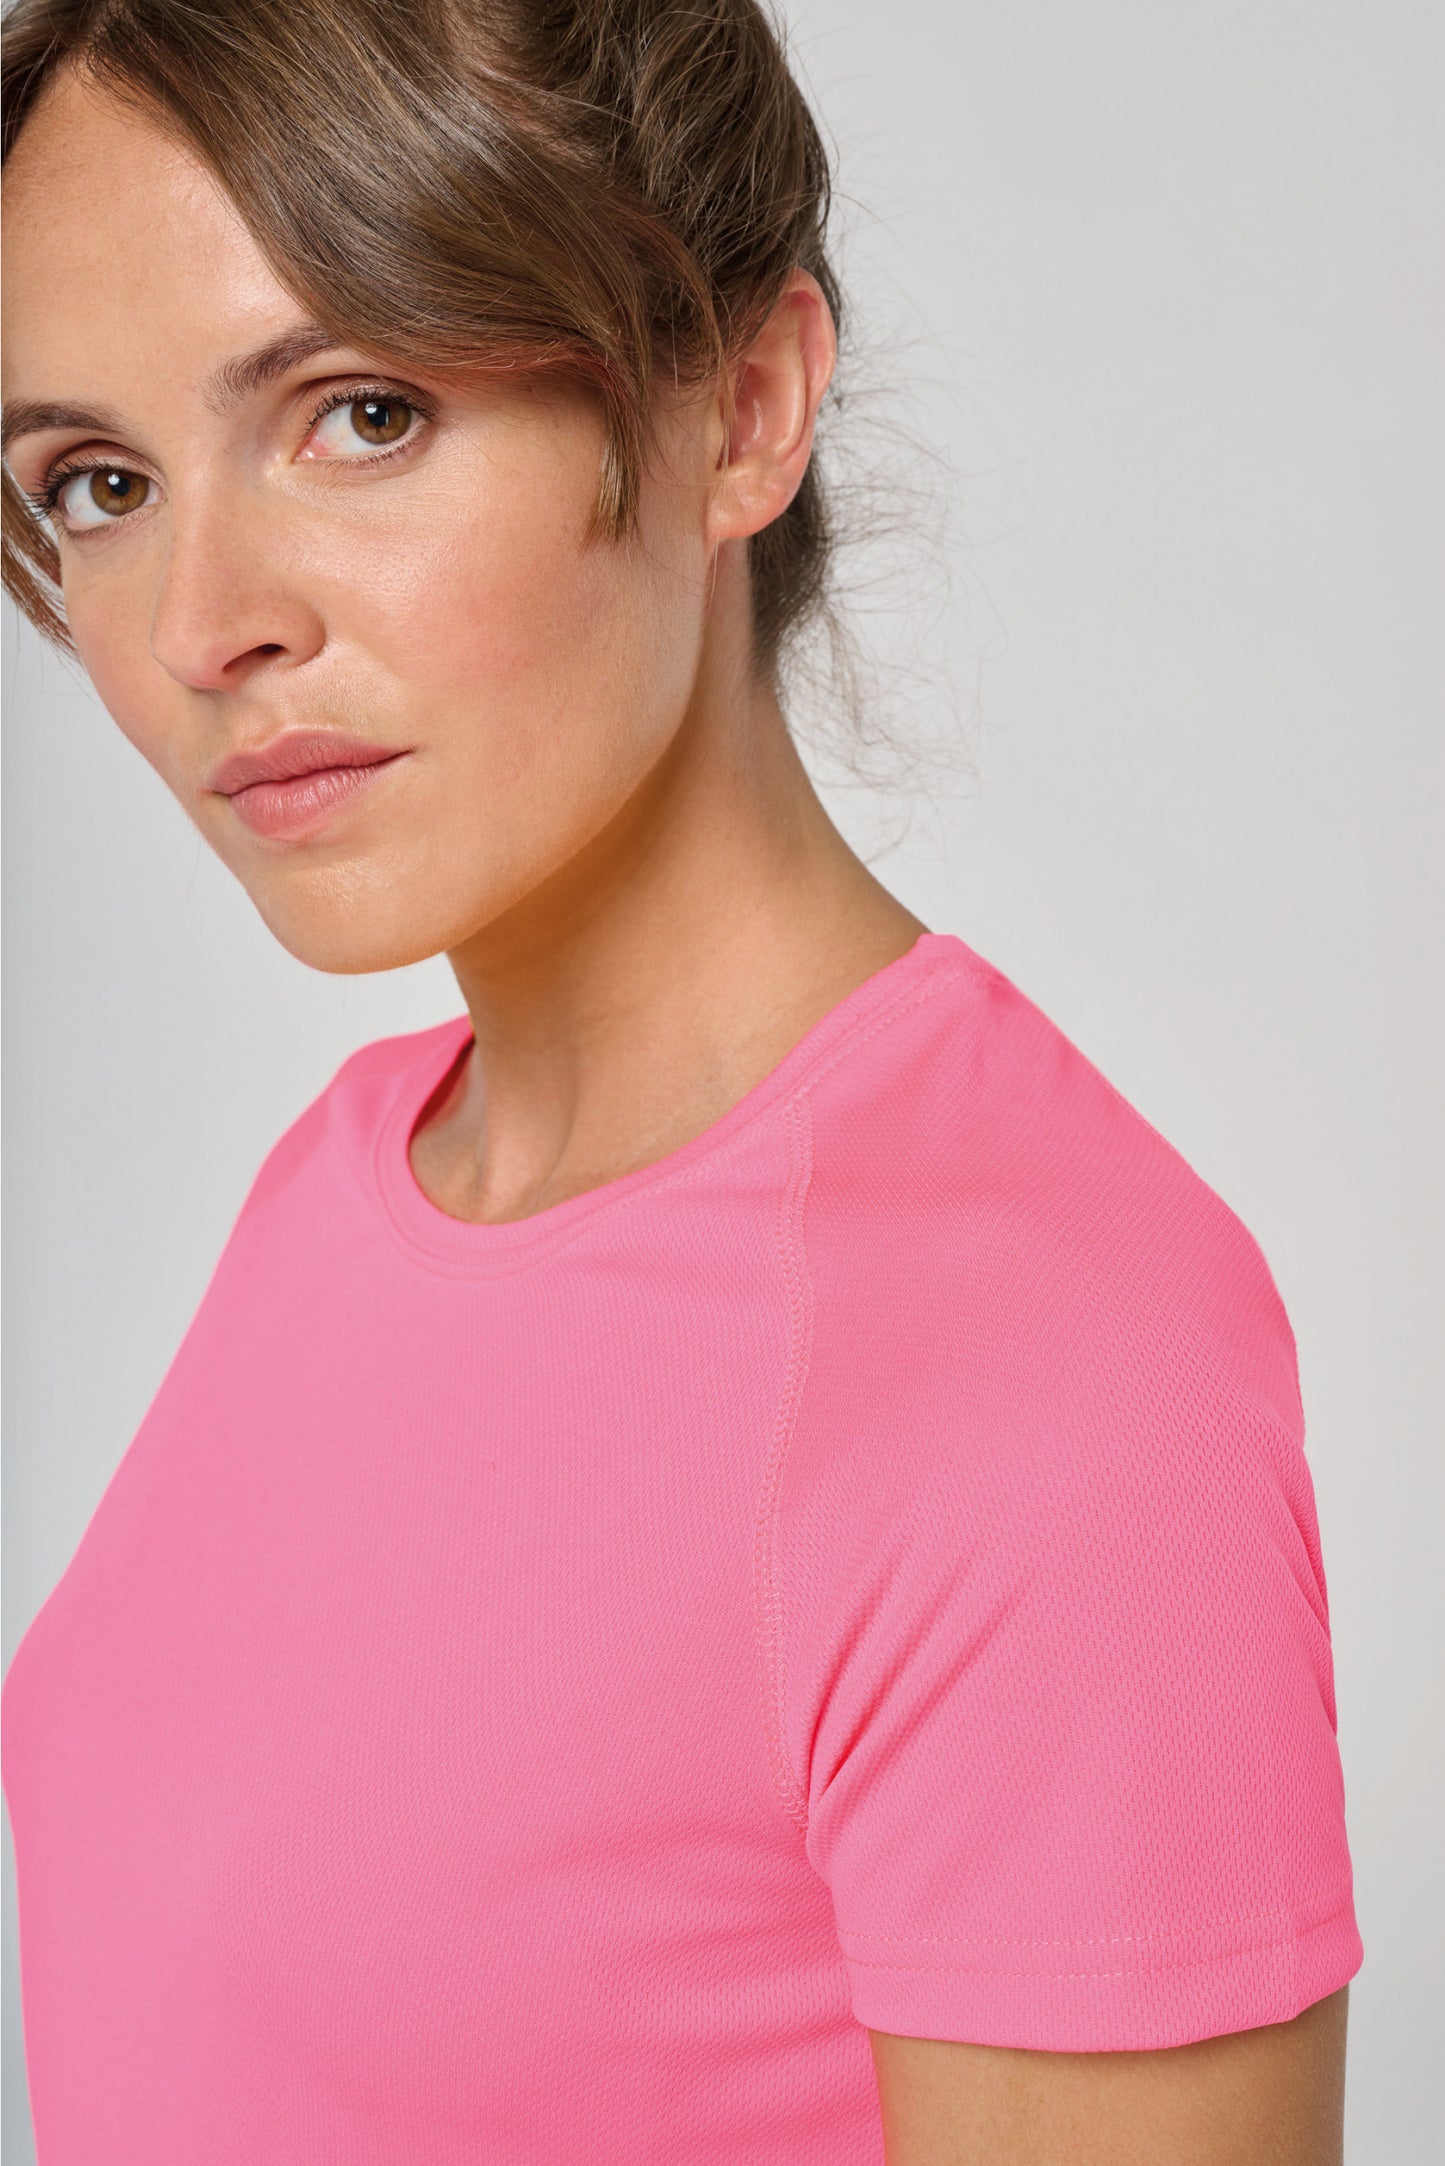 PA439 - T-shirt de sport manches courtes femme